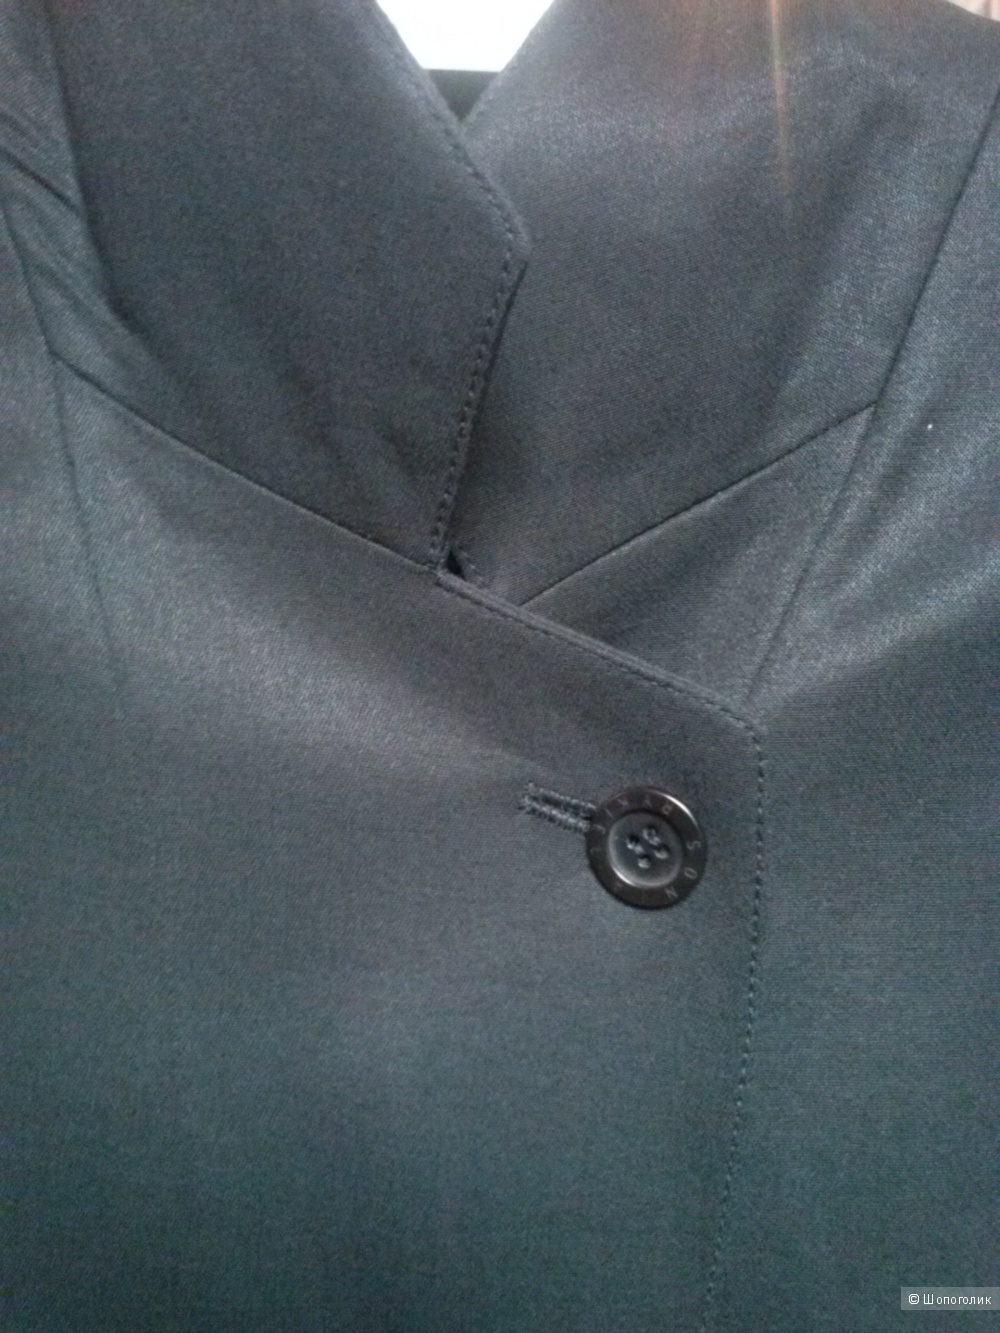 Пиджак SONIA RYKIEL, 48 рос. размер, состав хлопок-шёлк.